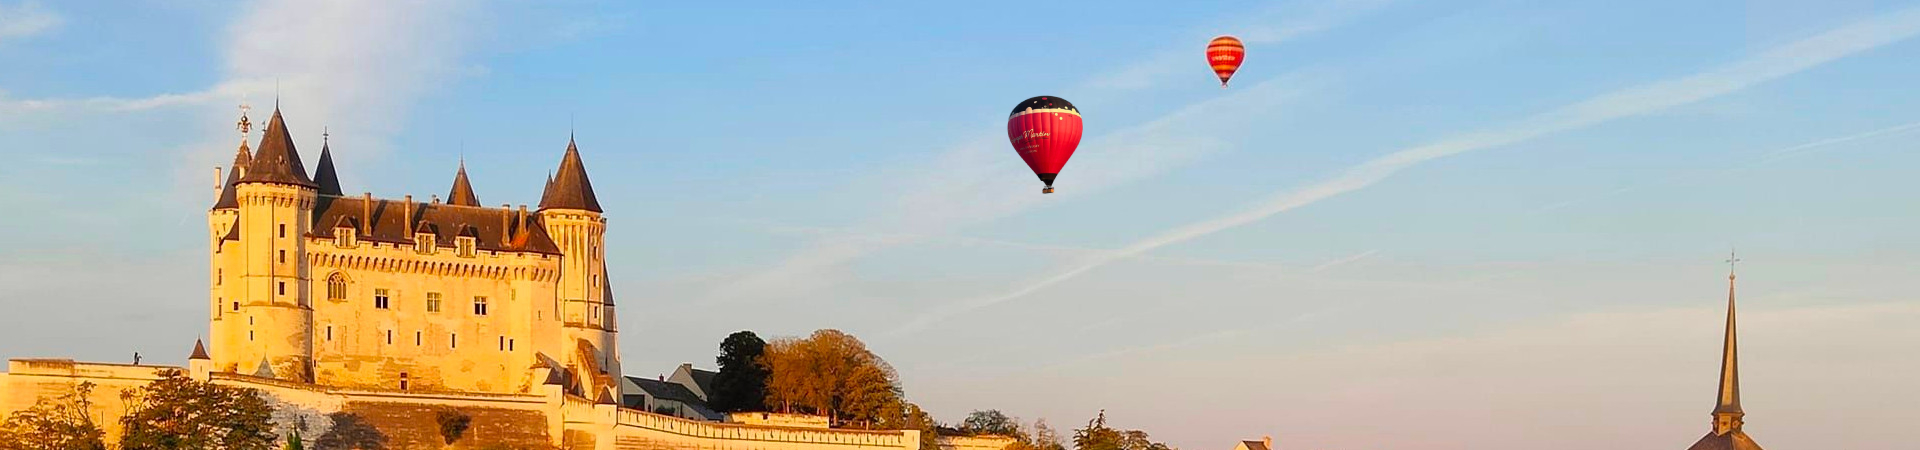 Chateau à saumur avec deux montgolfières en vol